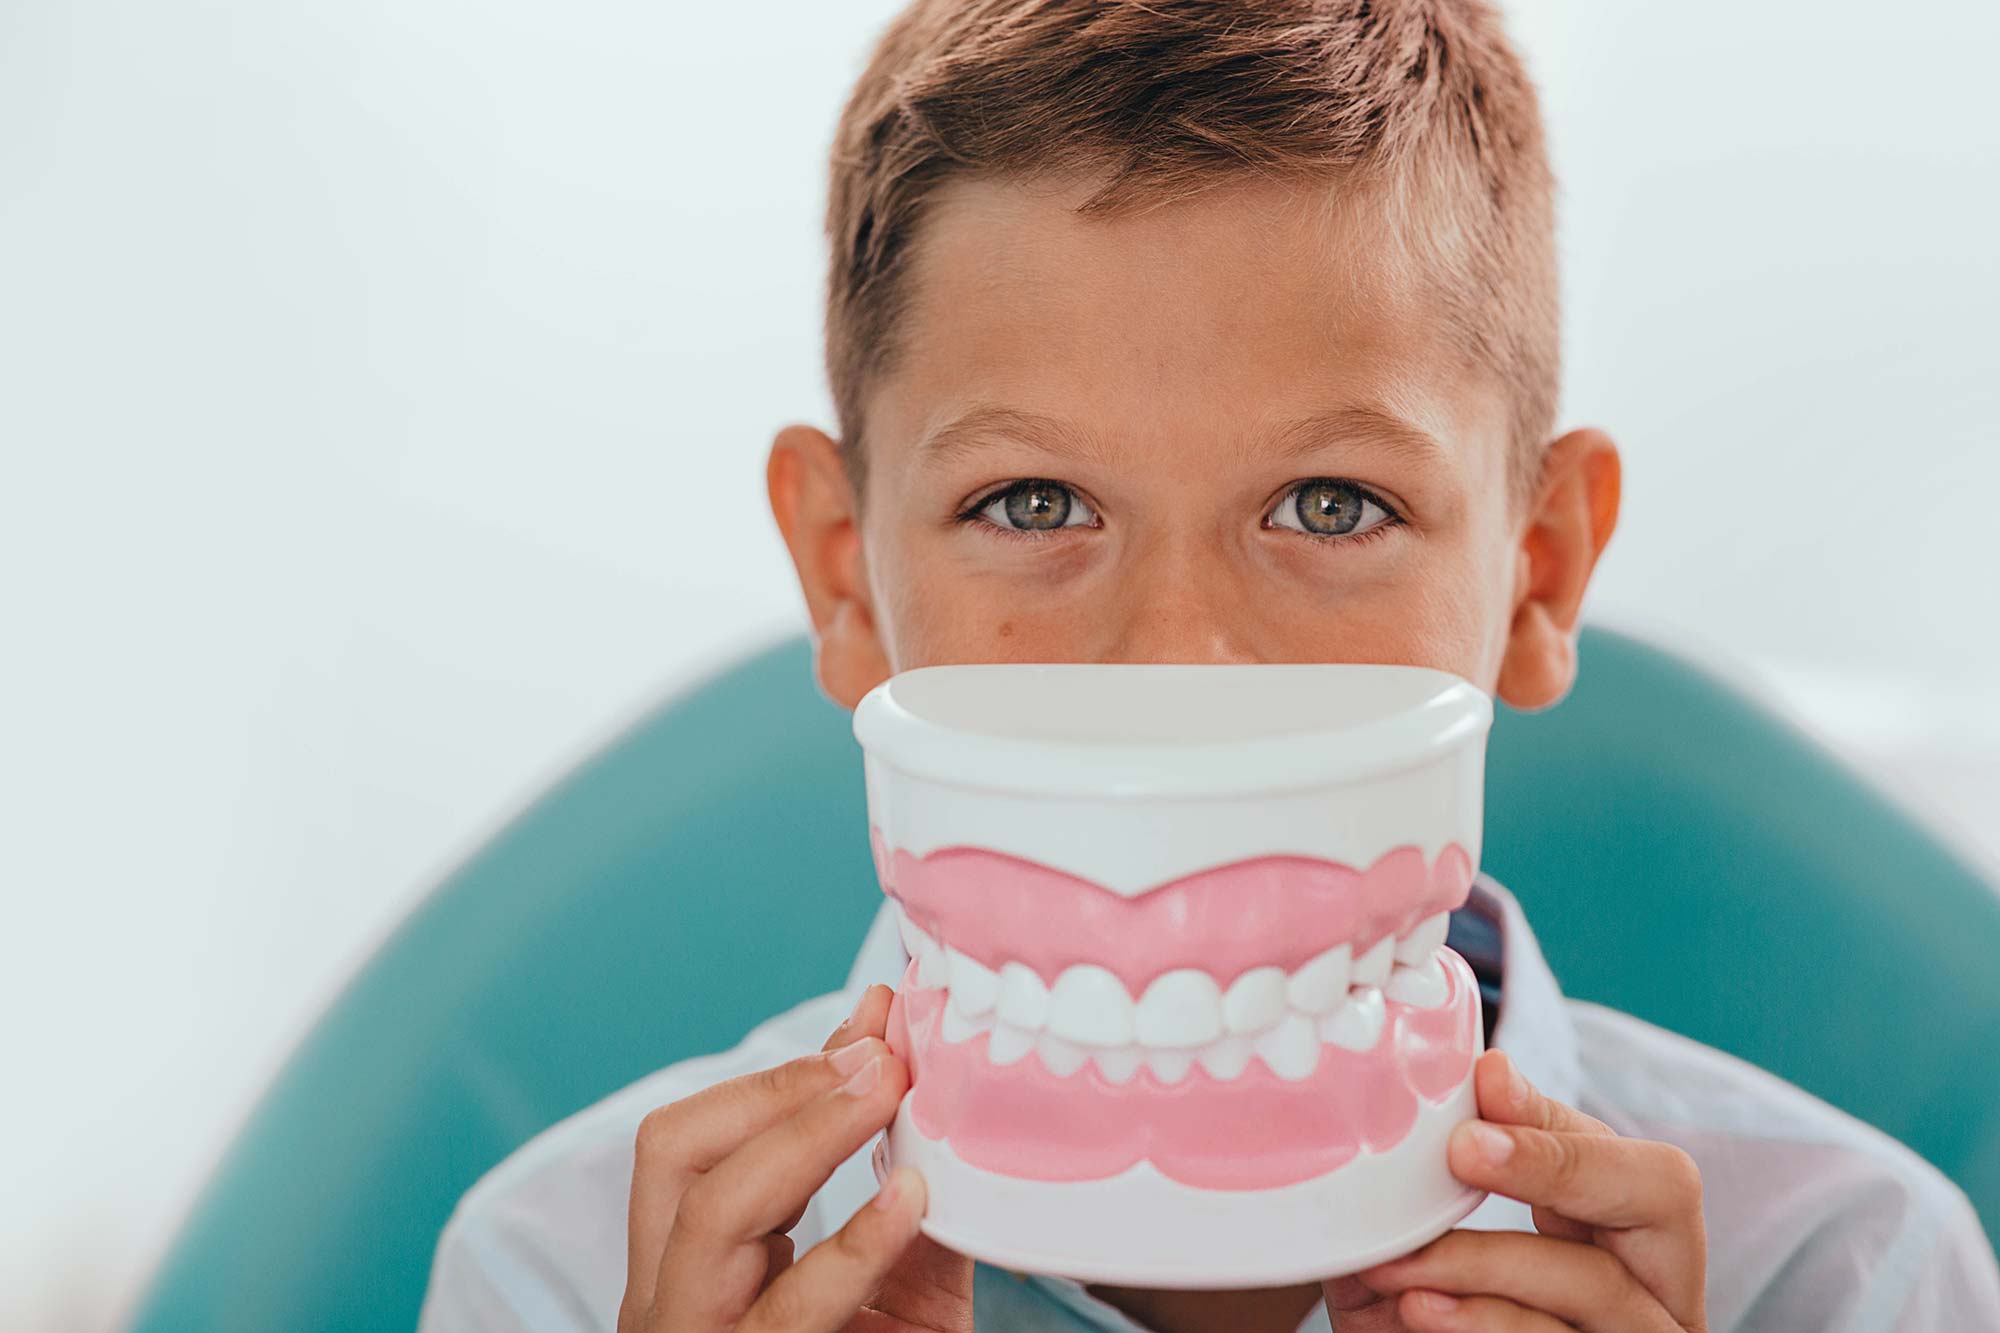 Child Dental Benefits Scheme (CDBS)